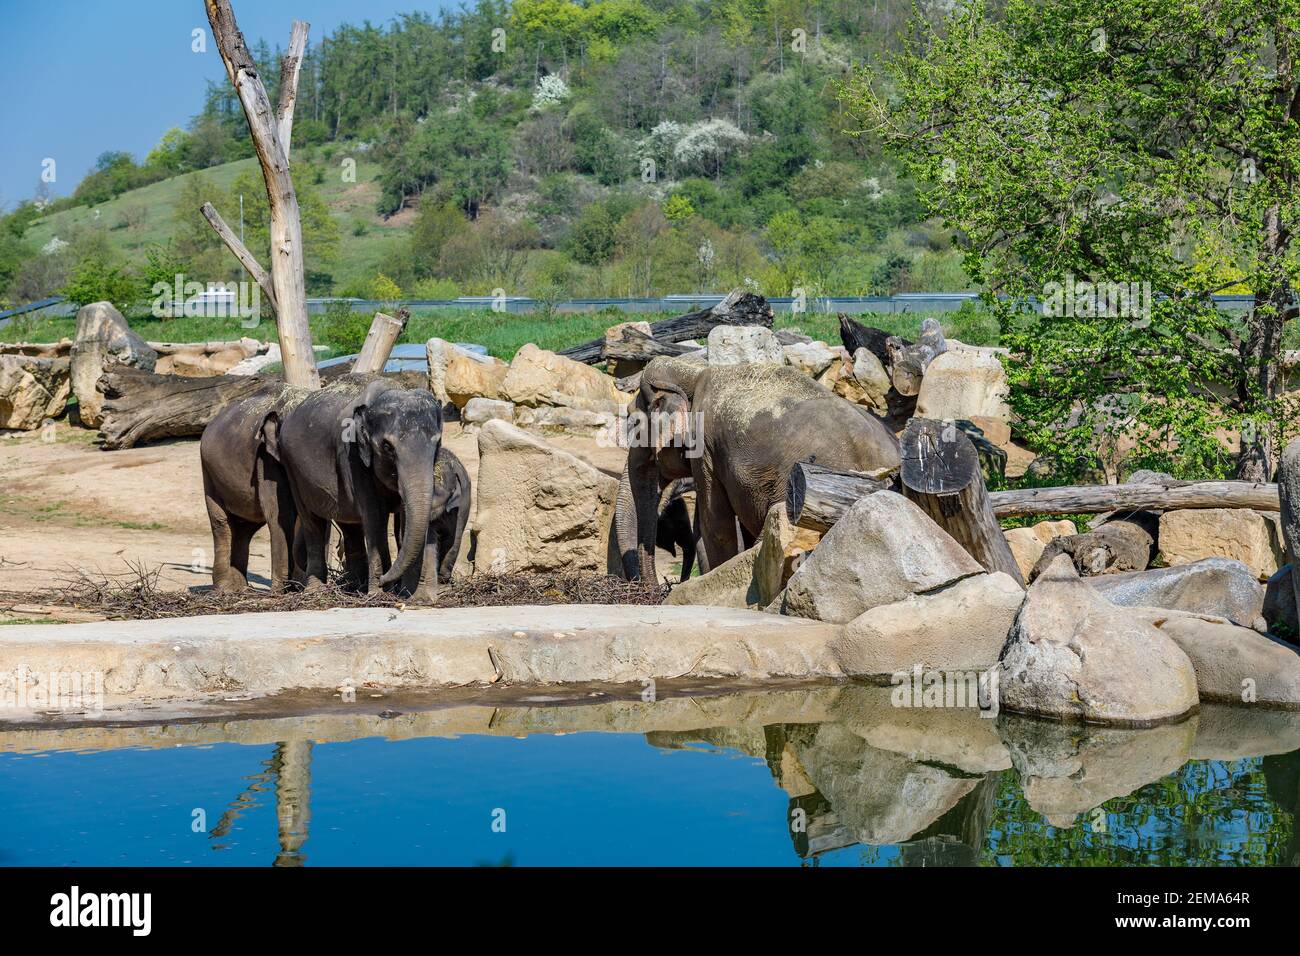 Mandria di elefanti nello zoo vicino allo stagno. Elefanti al buco di irrigazione alla ricerca di cibo. Foto Stock